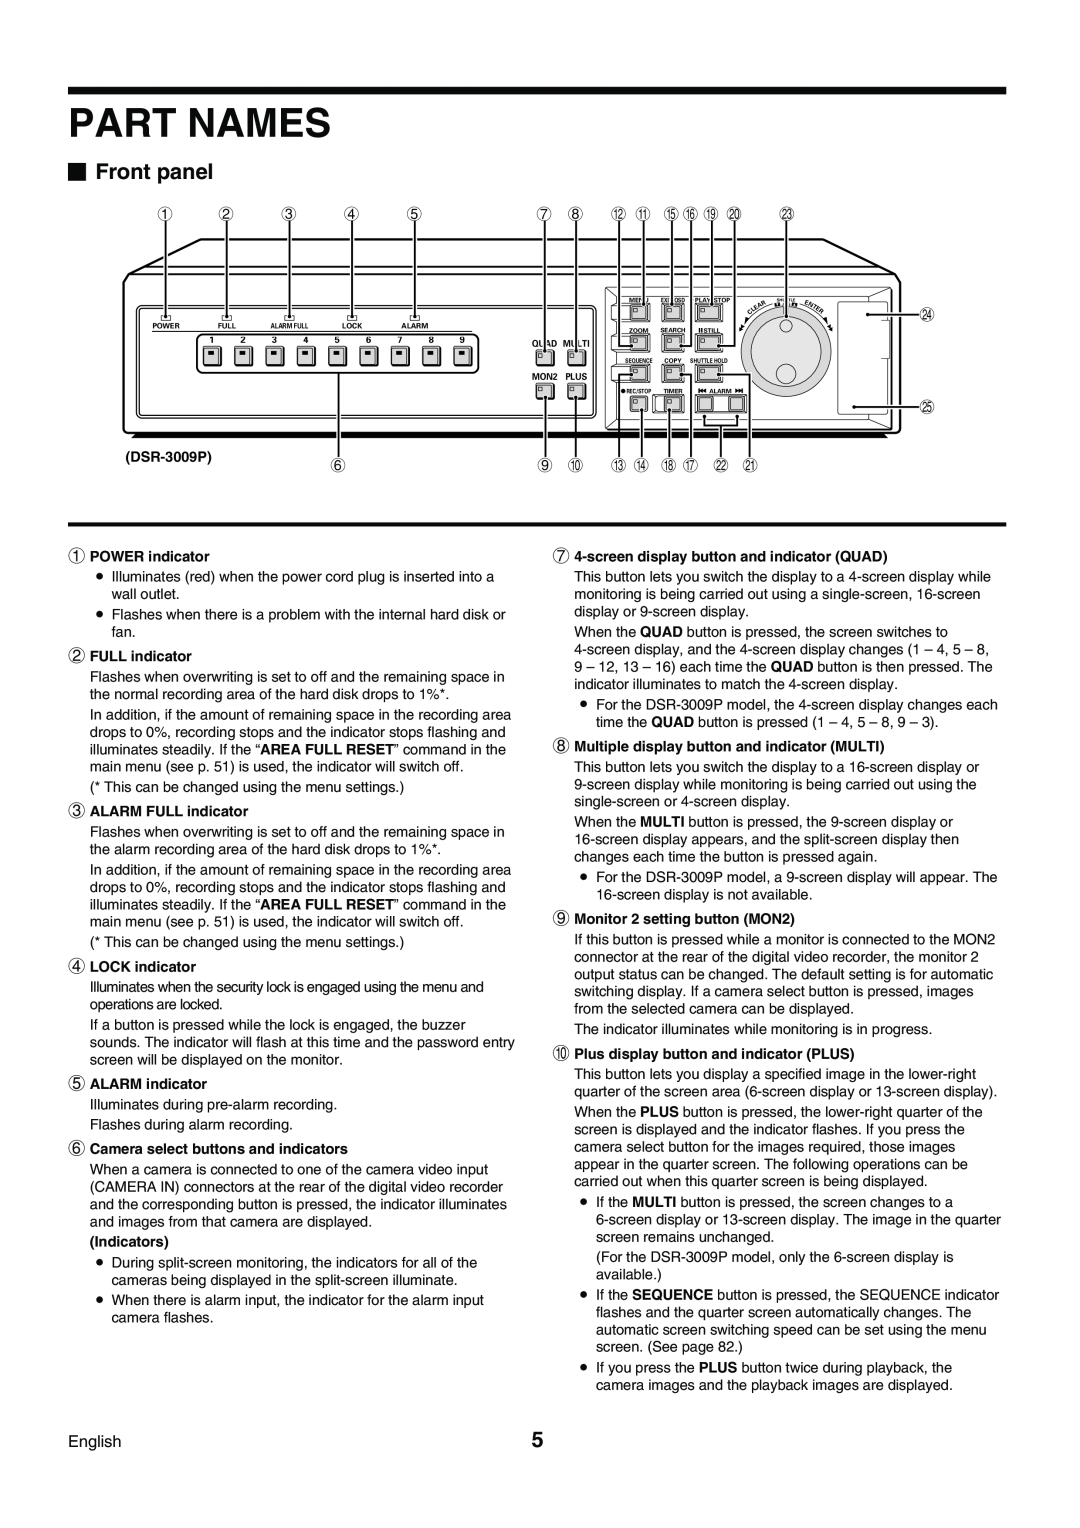 Sanyo DSR-3009P instruction manual Part Names, Front panel, 1 2 3 4, 7 8 H G KL O P S, I J N M R Q 